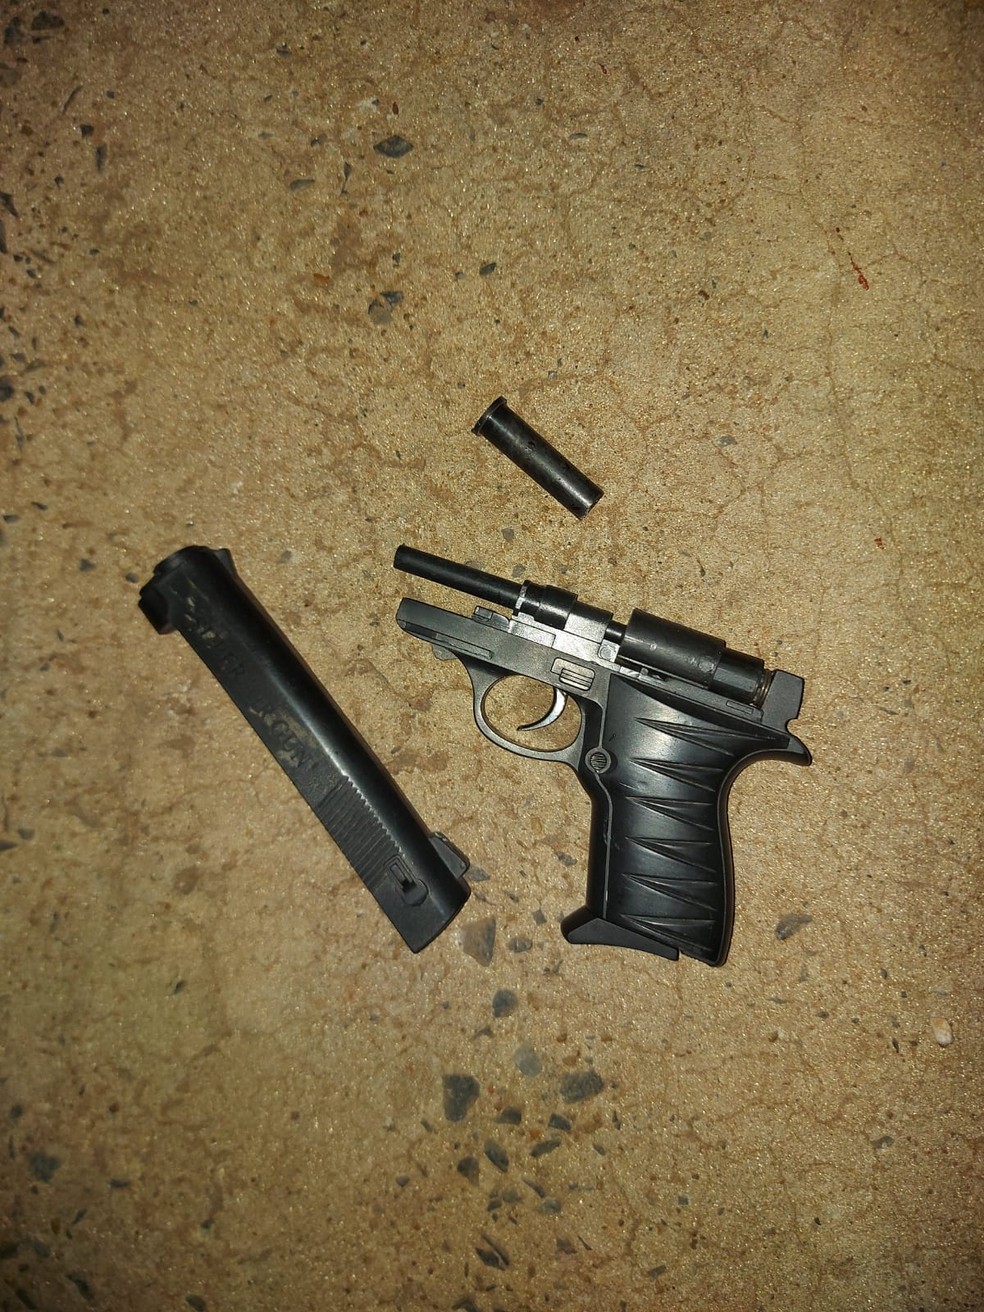 Arma de brinquedo usada pelo suspeito baleado — Foto: Polícia Militar de Mato Grosso